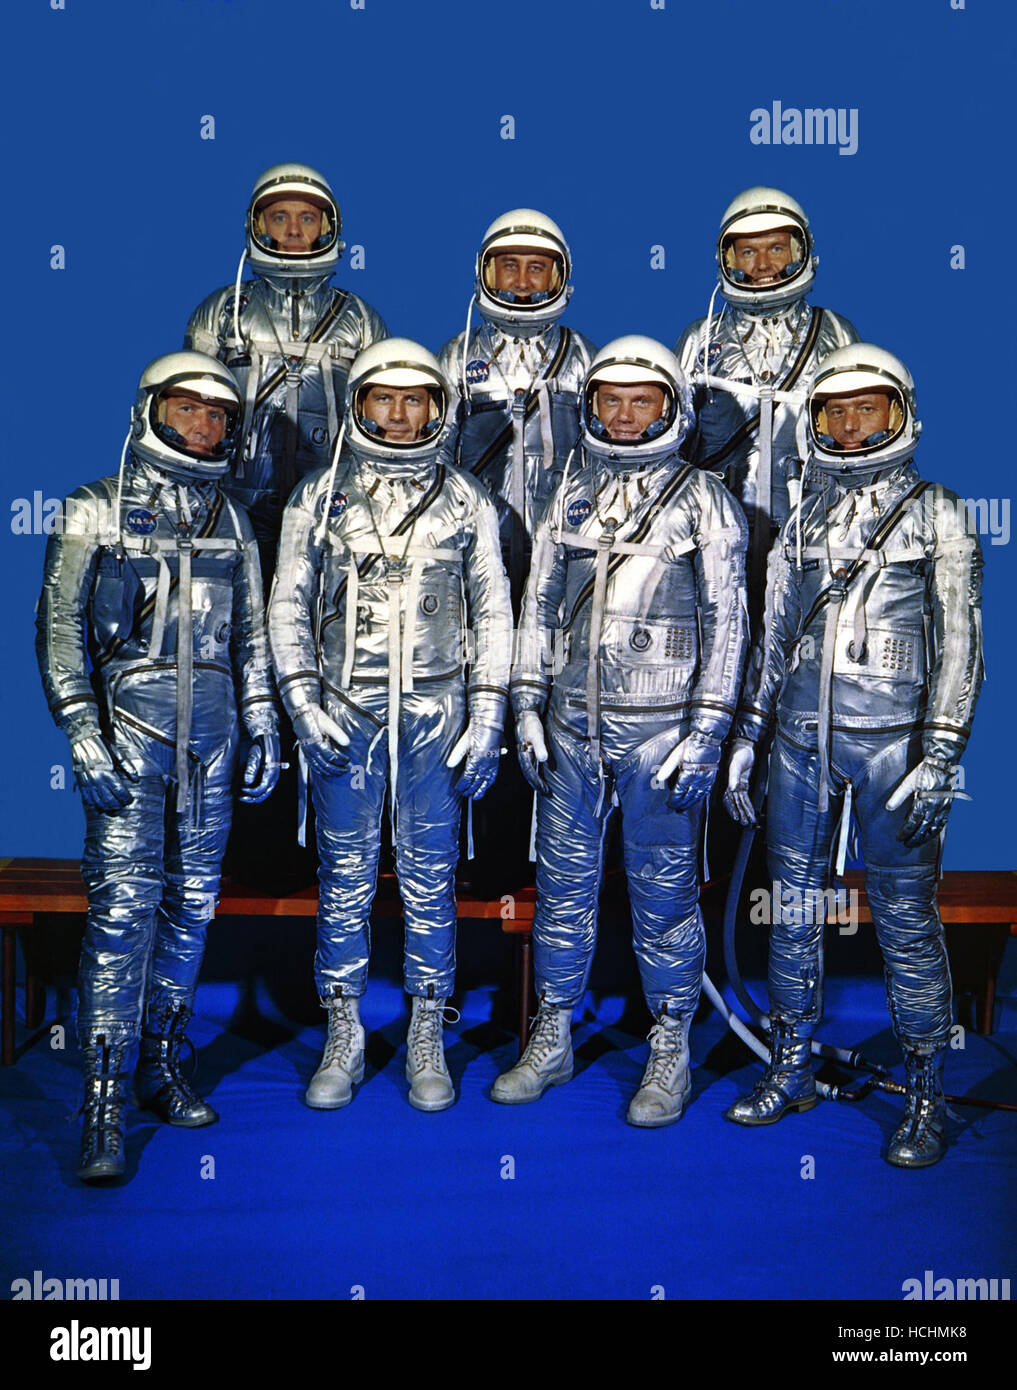 Original 7 Astronauten in Raumanzügen Quecksilber fotografiert am 3. Dezember 1962. Vordere Reihe, von links nach rechts, sind Walter M. Schirra Jr., Donald K. Slayton, John H. Glenn, Jr., und M. Scott Carpenter. Hintere Reihe, von links, sind Alan B. Shepard Jr., Virgil I.Grissom und L. Gordon Cooper Jr. EDITOR Hinweis: da dieses Foto gemacht wurde: Grissom starb am 27. Januar 1967, im Apollo 1/Saturn 204 Feuer in Cape Kennedy, Florida; Slayton starb 13. Juni 1993 in League City, Texas, an den Folgen eines Hirntumors. Shepard starb am 21. Juli 1998. Cooper starb 4. Oktober 2004. Schirra starb am 2. Mai 2007 Stockfoto